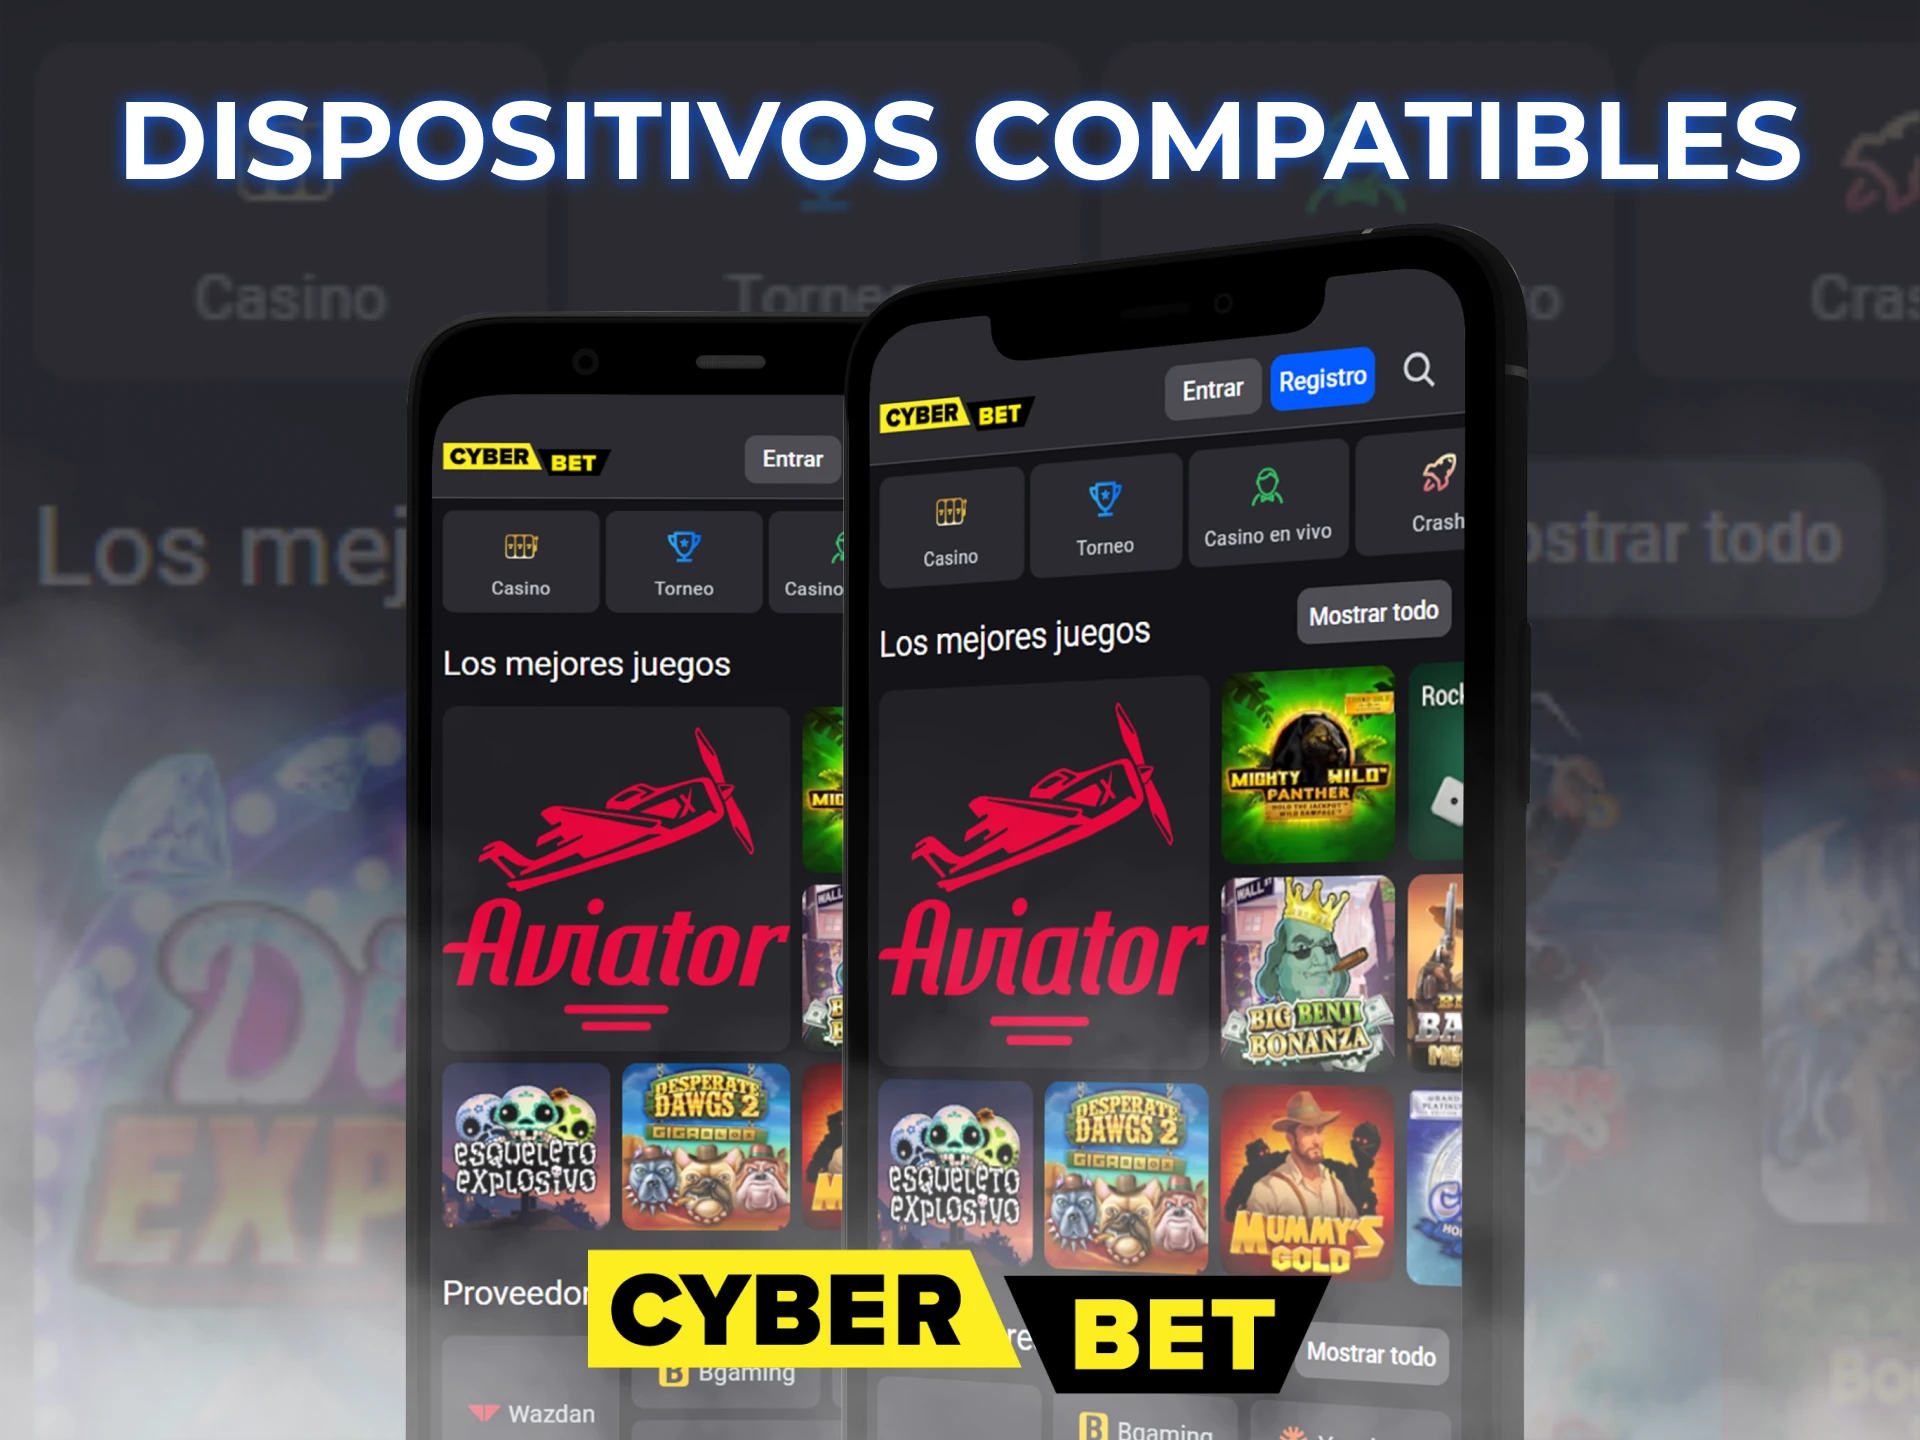 La aplicación Cyber Bet es compatible con muchos dispositivos Android.